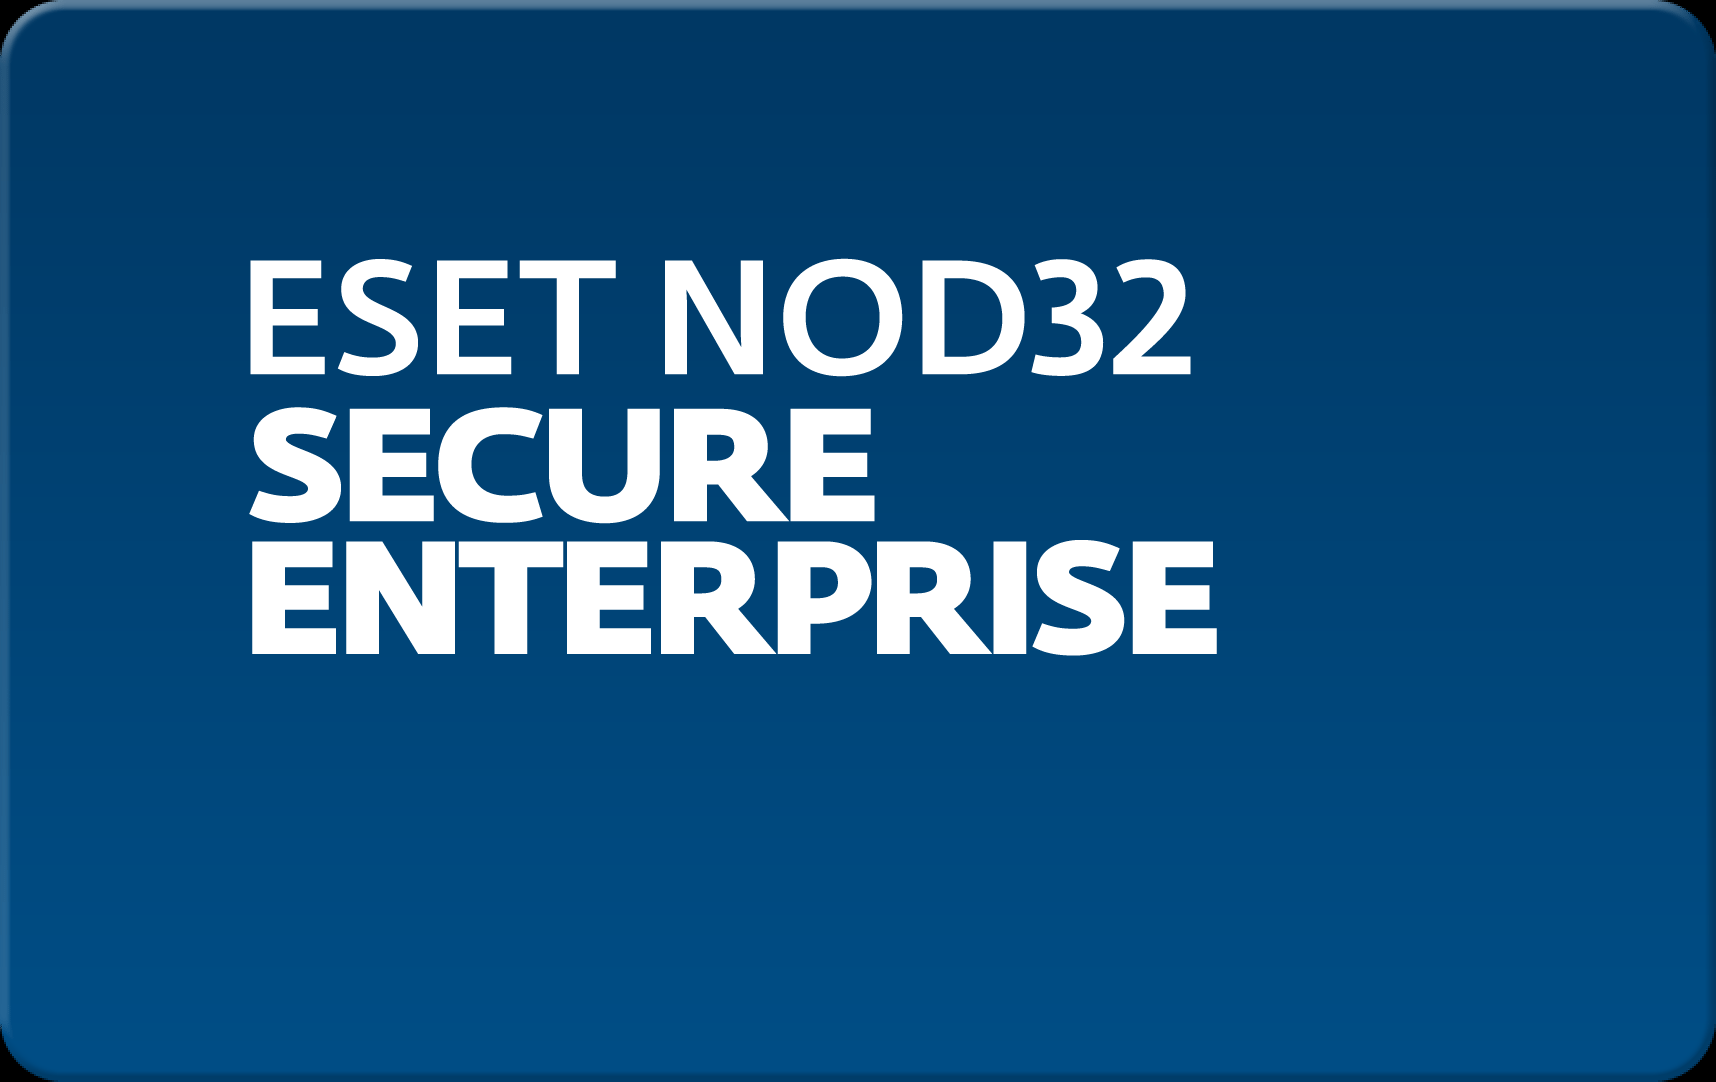        Eset NOD32 Secure Enterprise  156  NOD32-ESE-NS-1-156  #1